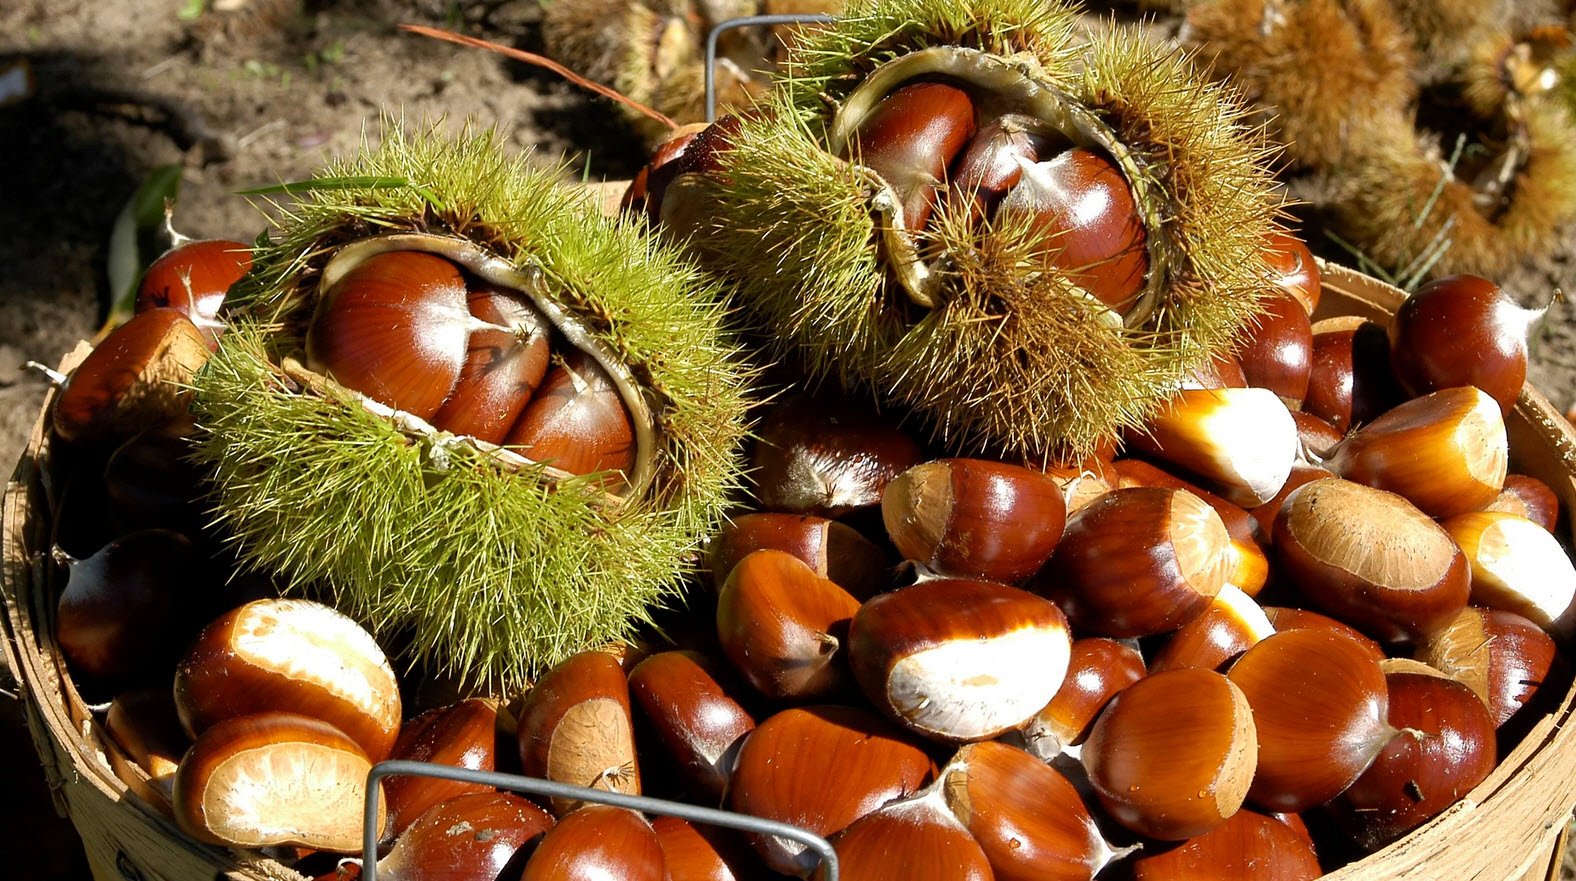 Chestnuts Benefits Whizoweb